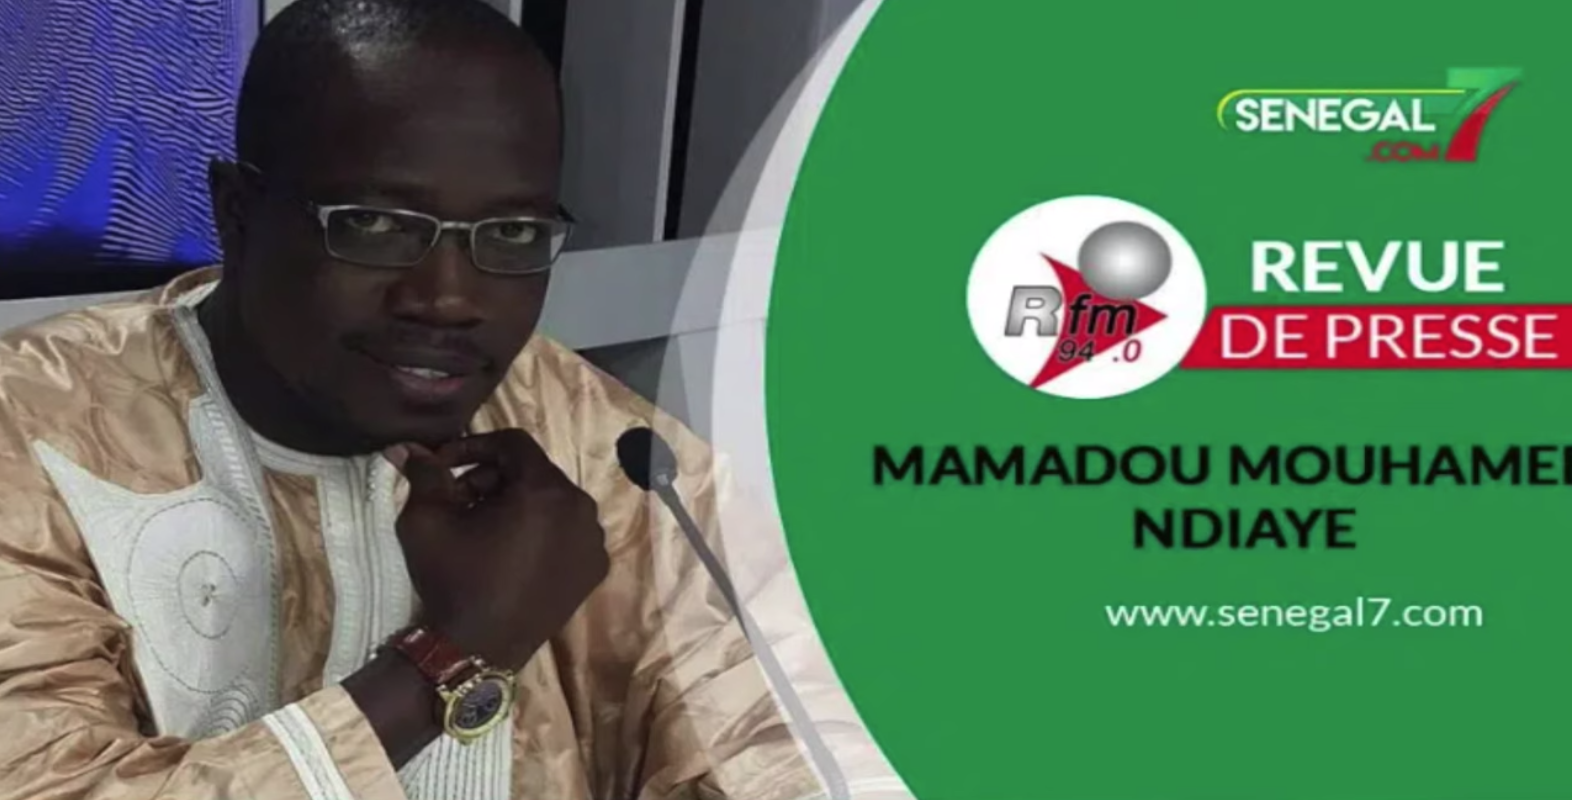 Revue de presse (wolof) Rfm du vendredi 23 septembre 2021 avec Mamadou Mouhamed Ndiaye